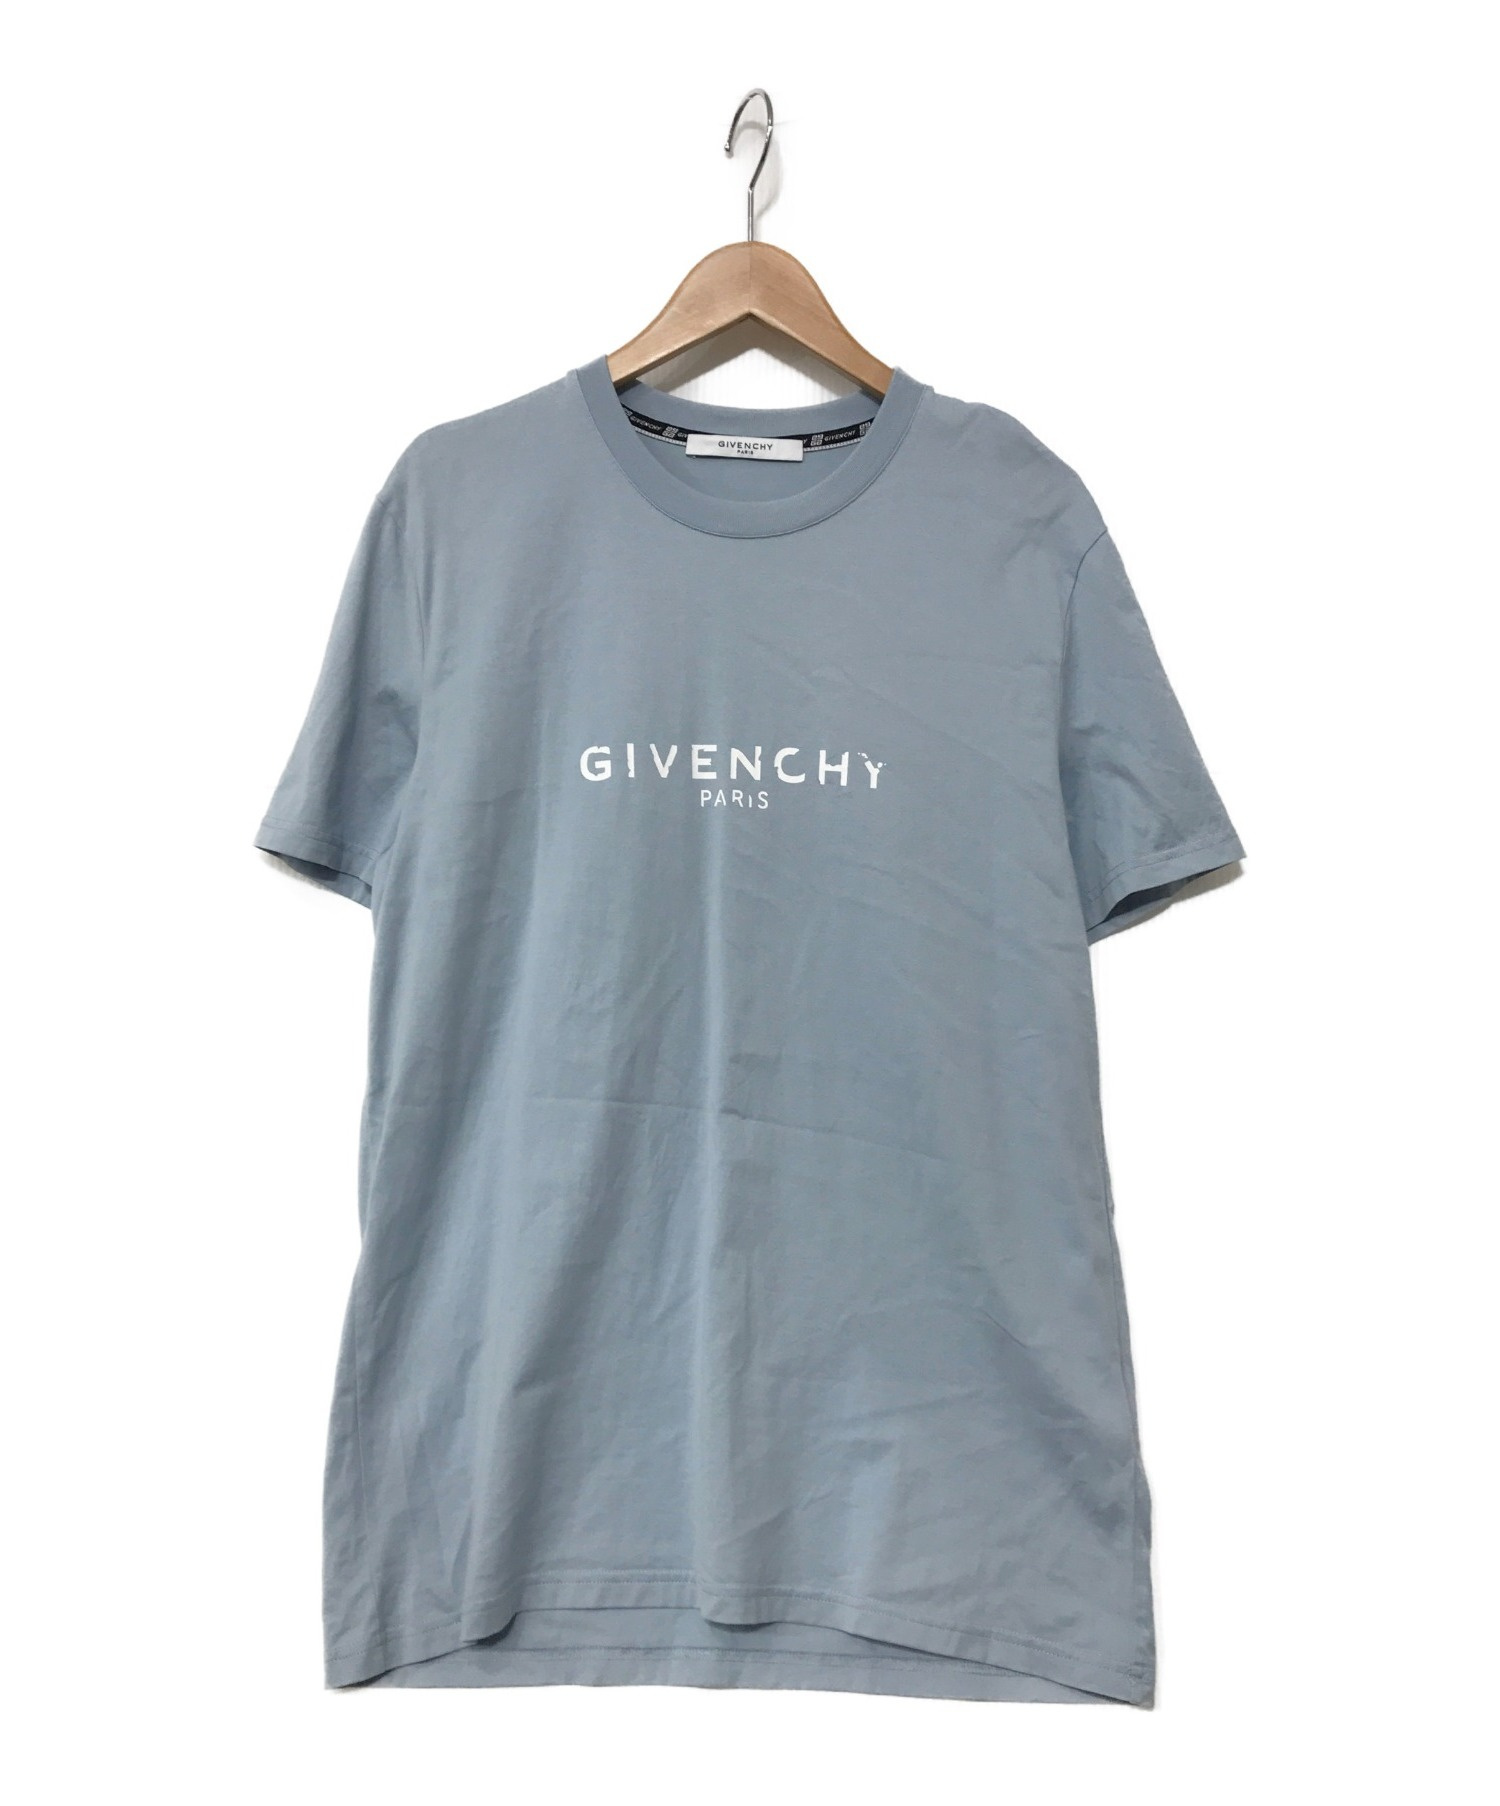 GIVENCHY (ジバンシィ) ヴィンテージロゴTシャツ ブルー サイズ:M 